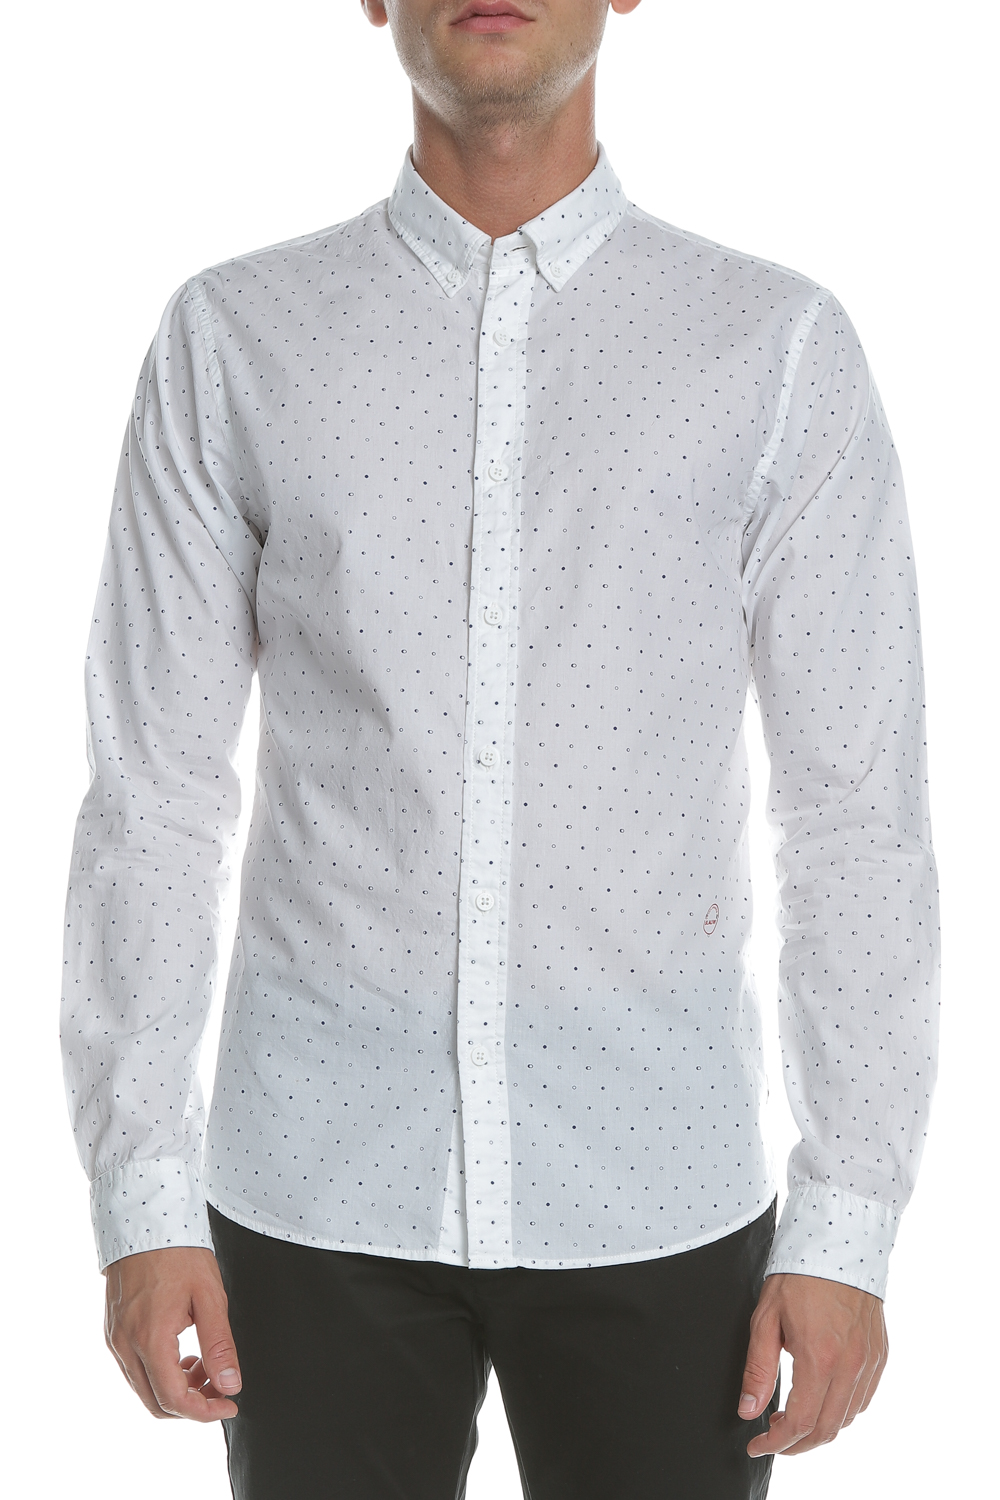 Ανδρικά/Ρούχα/Πουκάμισα/Μακρυμάνικα SCOTCH & SODA - Ανδρικό μακρυμάνικο πουκάμισο SCOTCH & SODA λευκό